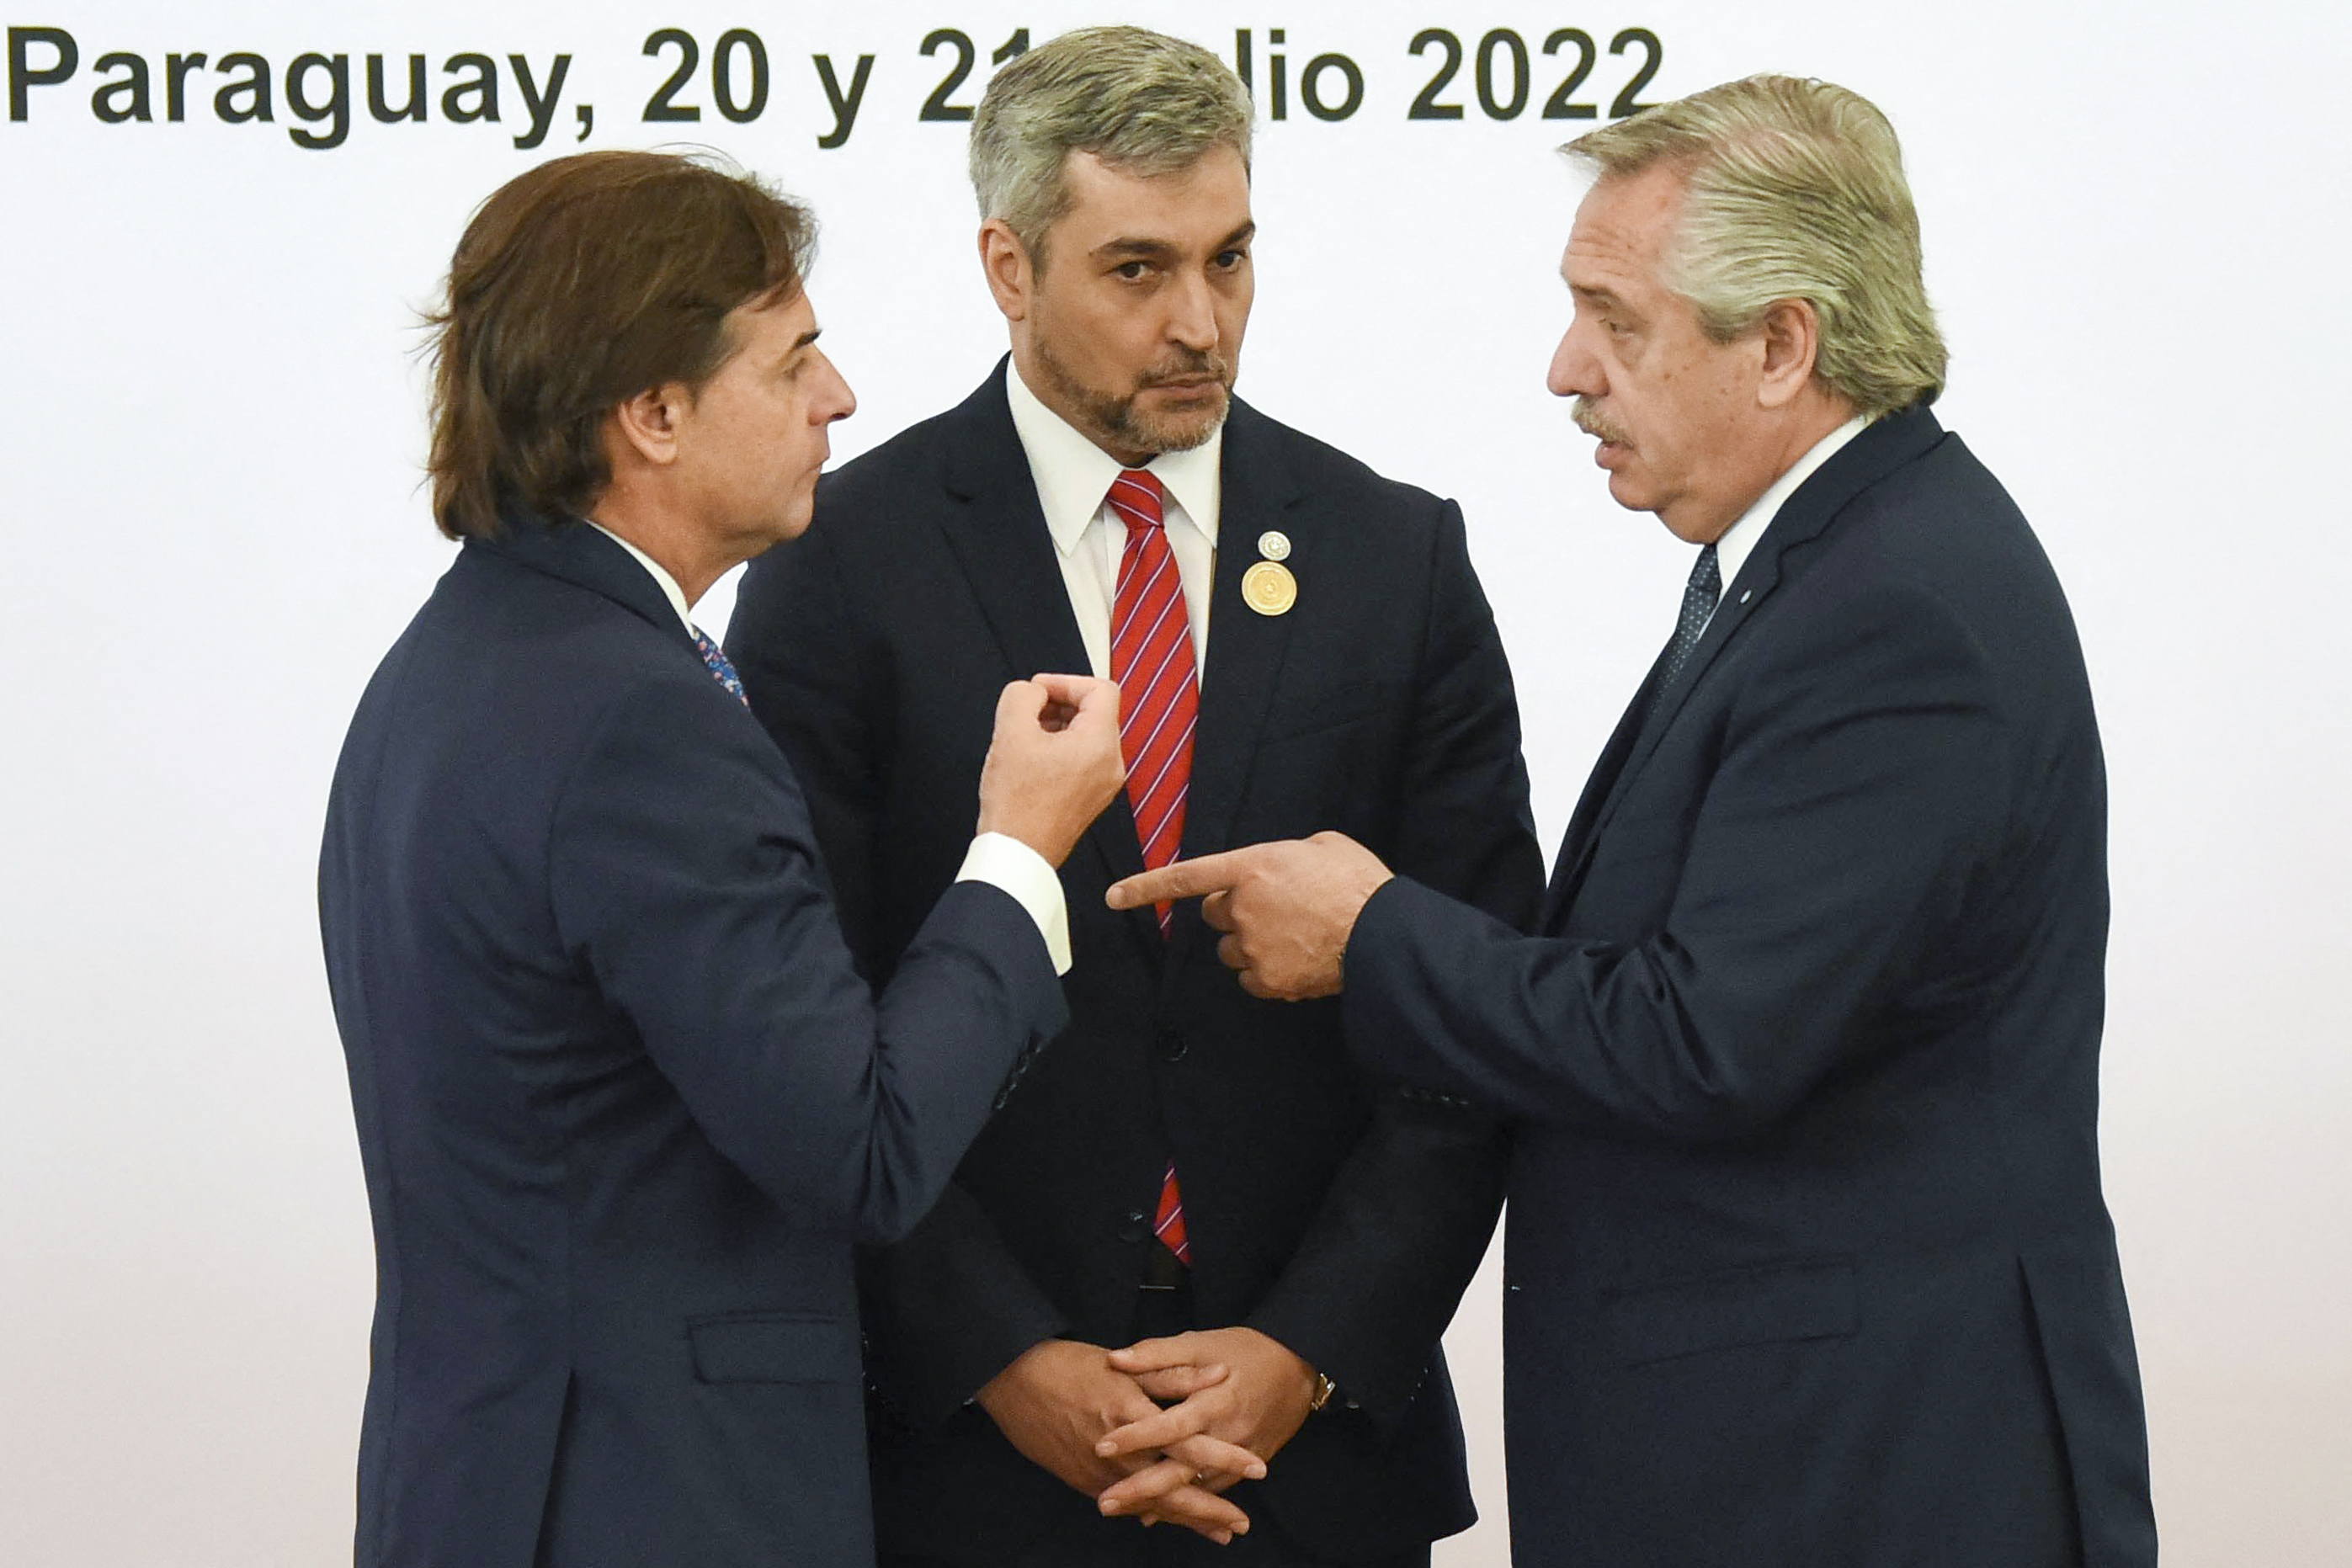 Luis Lacalle Pou, Mario Abdo Benitez y Alberto Fernandez conversan en la última cumbre del Mercosur en Paraguay